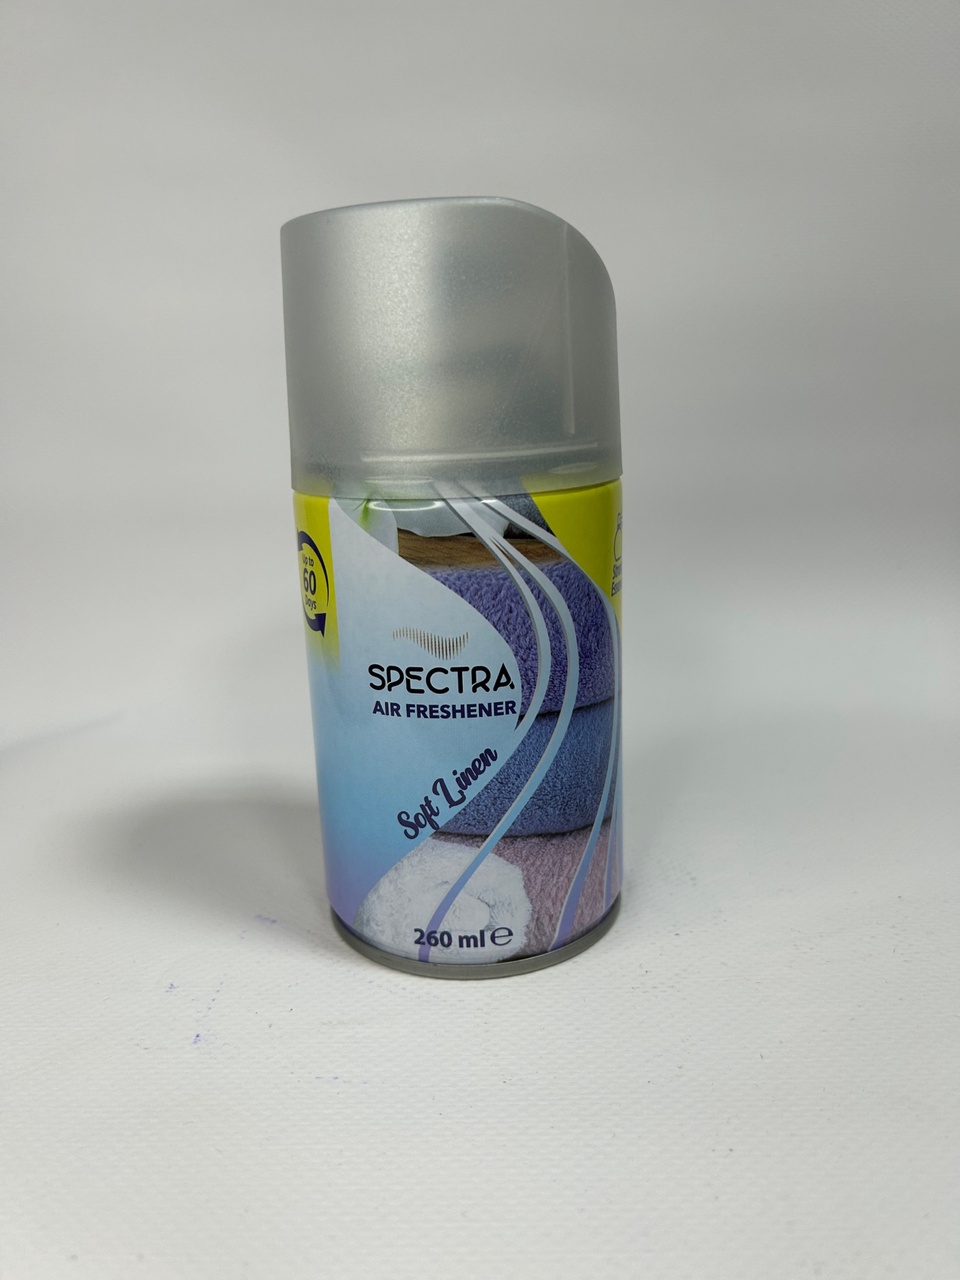 Спрей освежитель Spectra “Soft Liner” - 180 ₽, заказать онлайн.